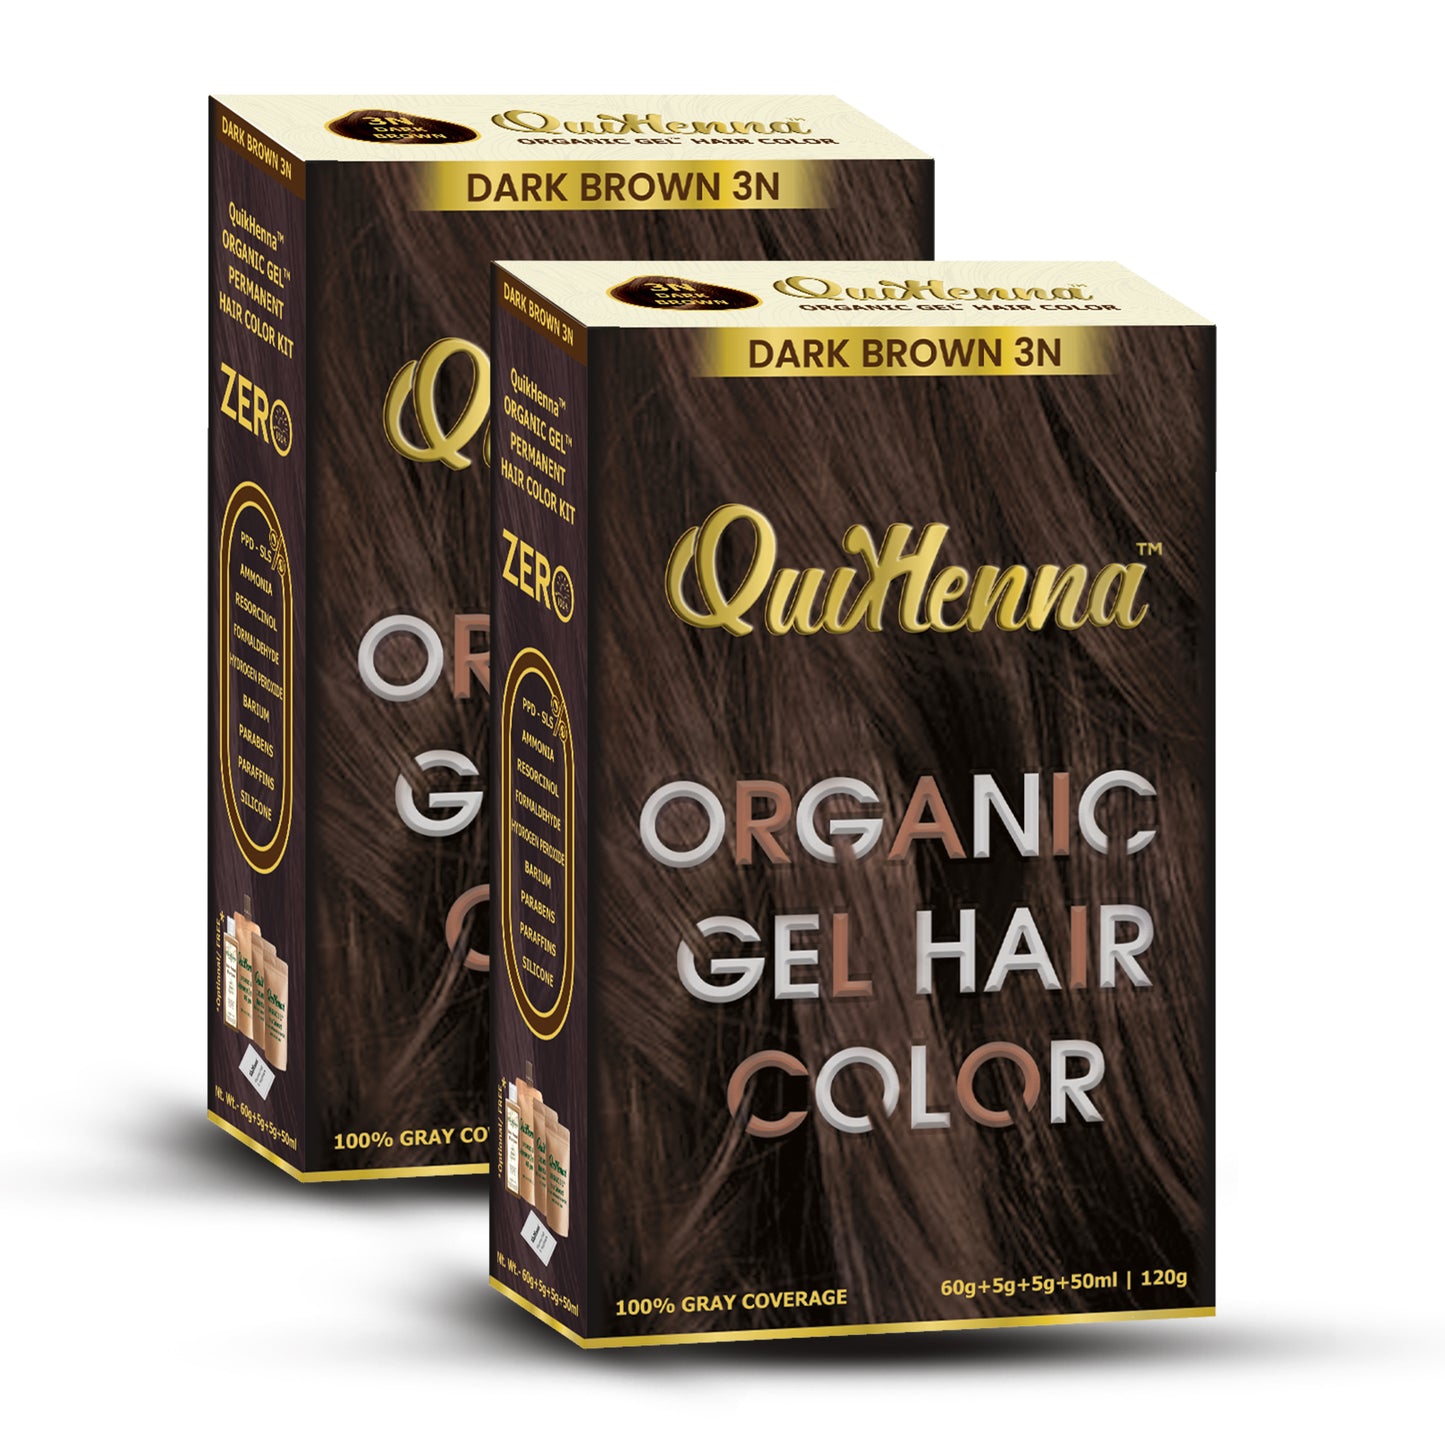 QuikHenna Organic Gel Hair Colour-22